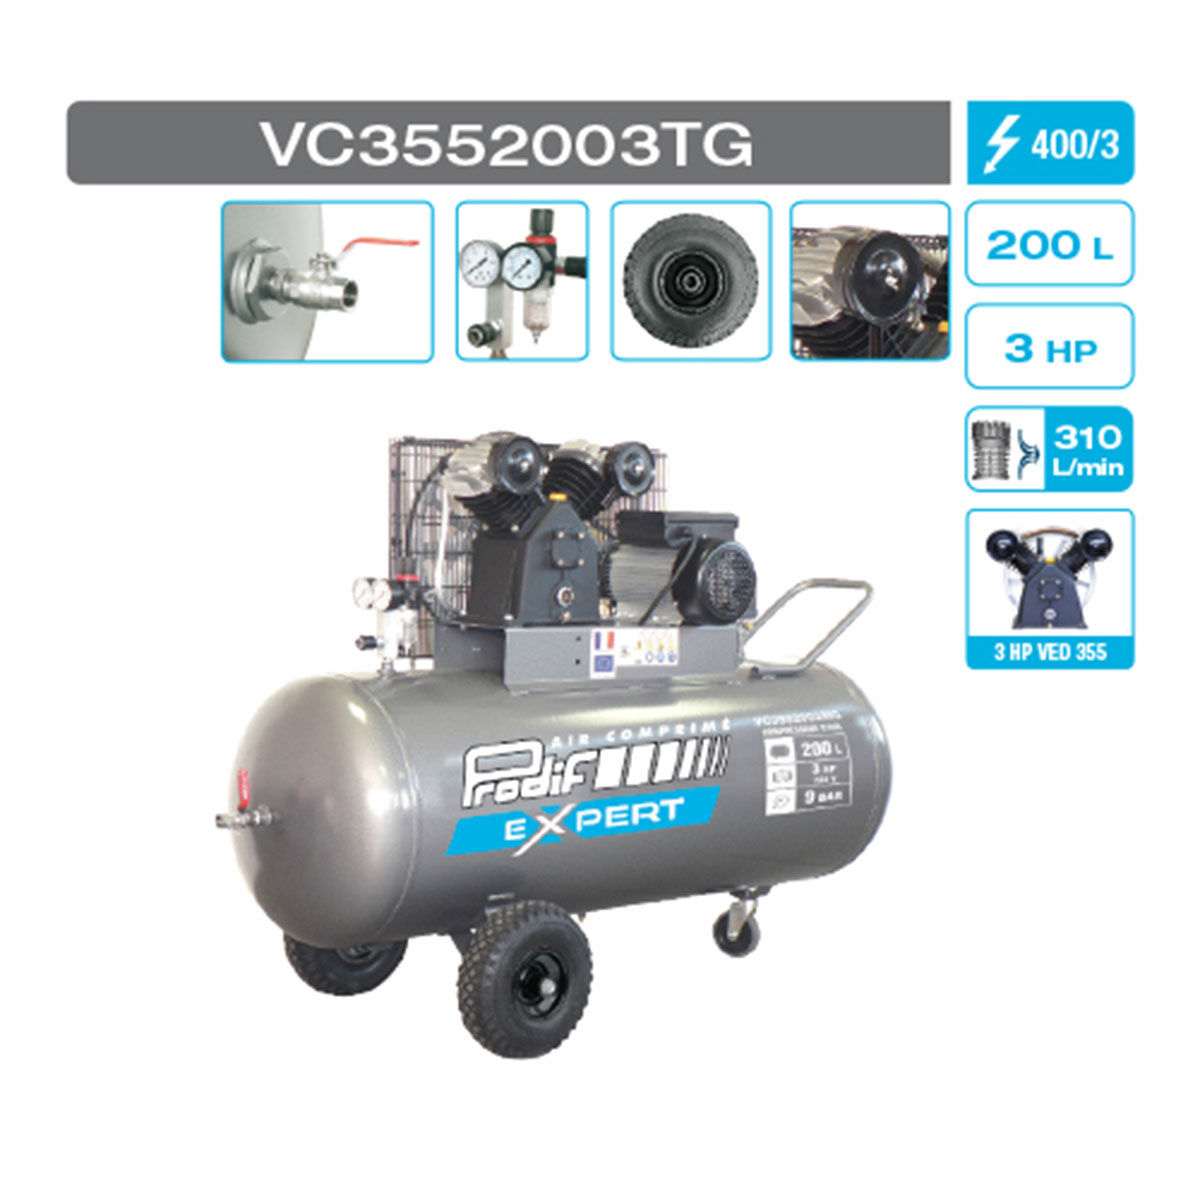 Compresseur VC3552003TG mobile 200L 400V 18,6m³/h 2 cylindres